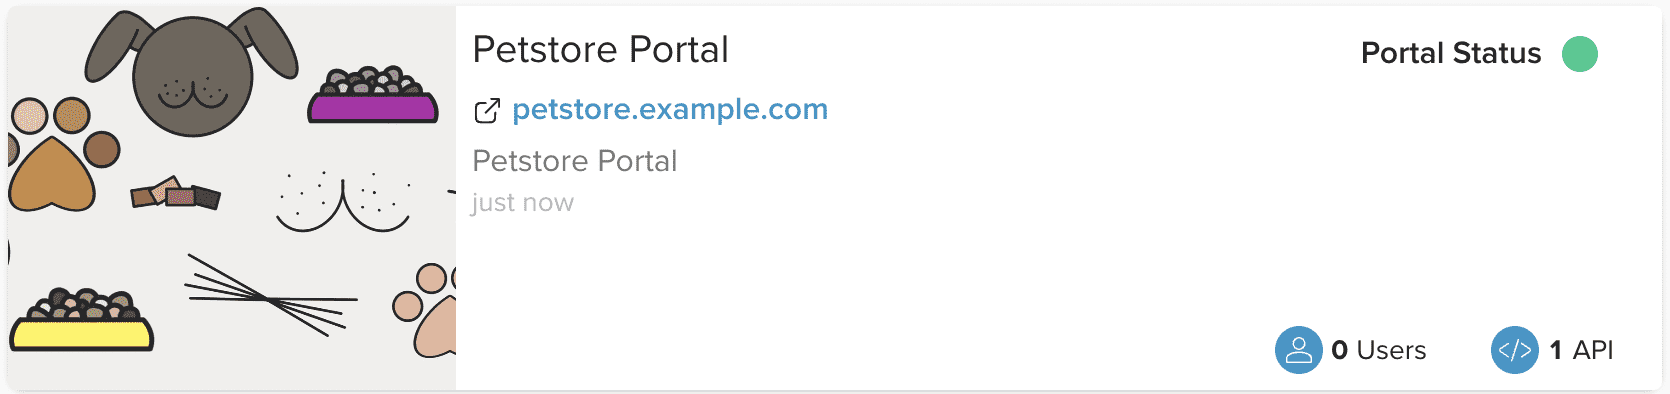 Admin Dashboard Create Portal Complete